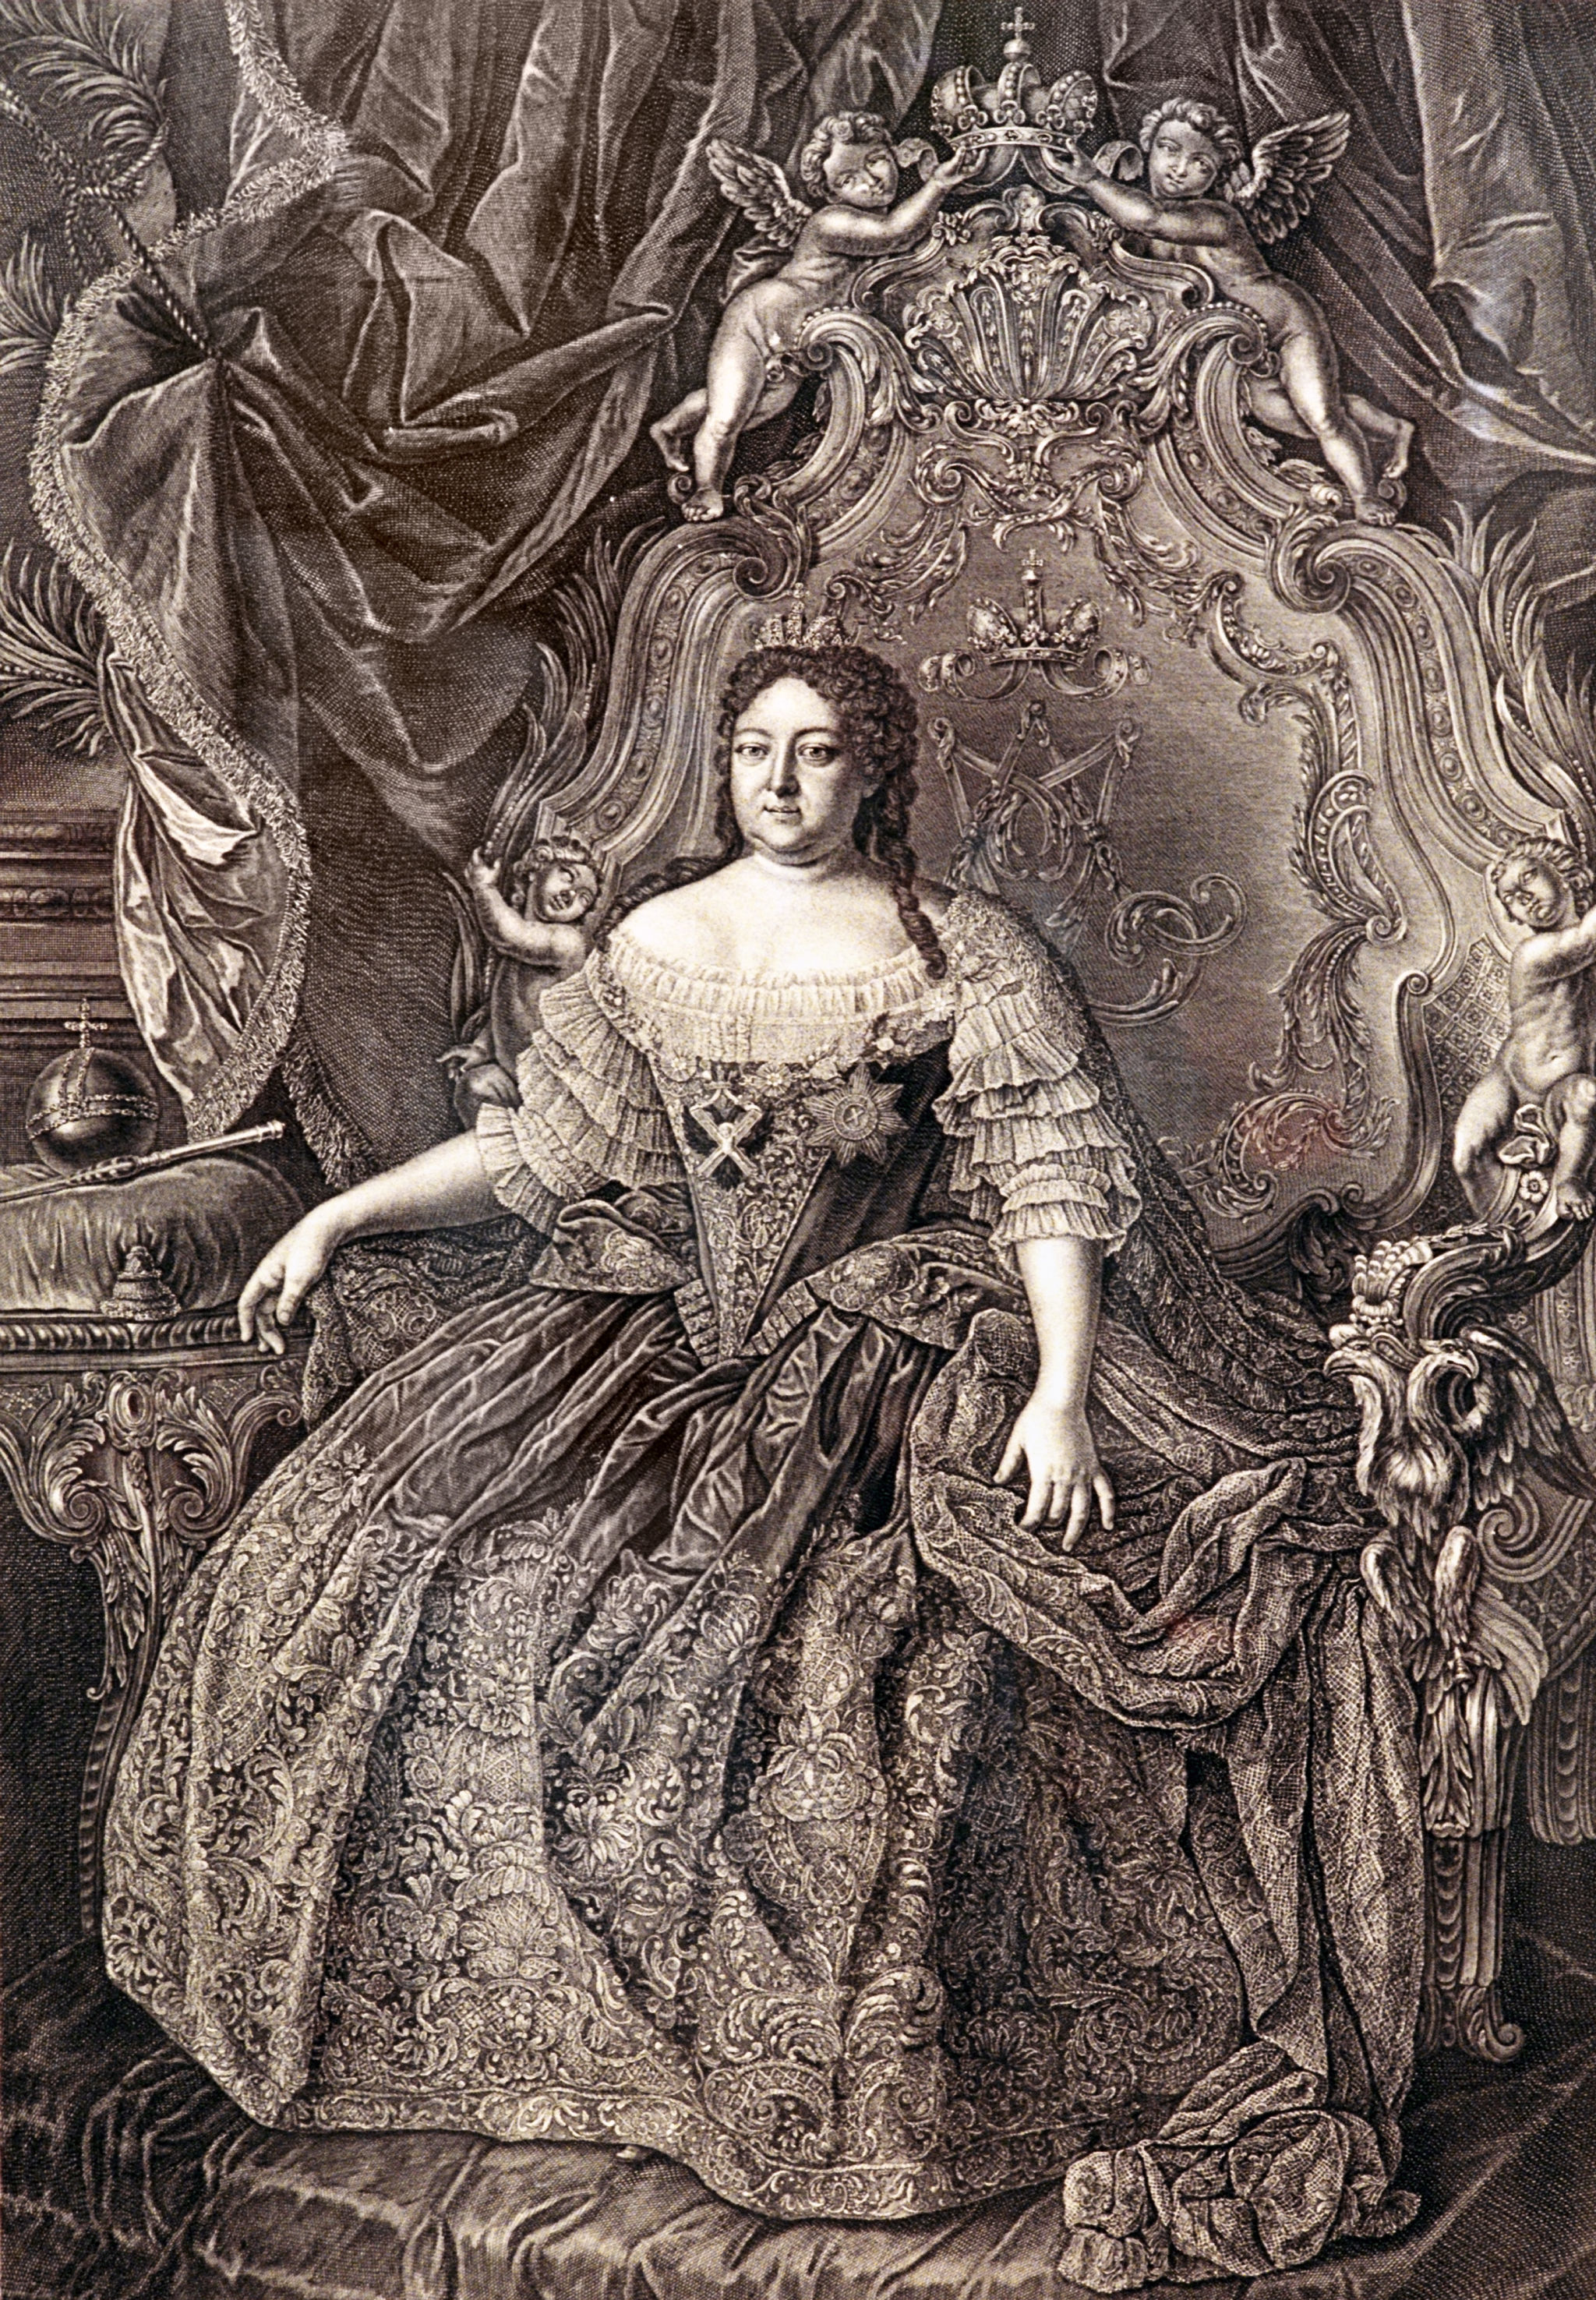 Гравюра "Портрет императрицы Анны Иоанновны", 1740 год